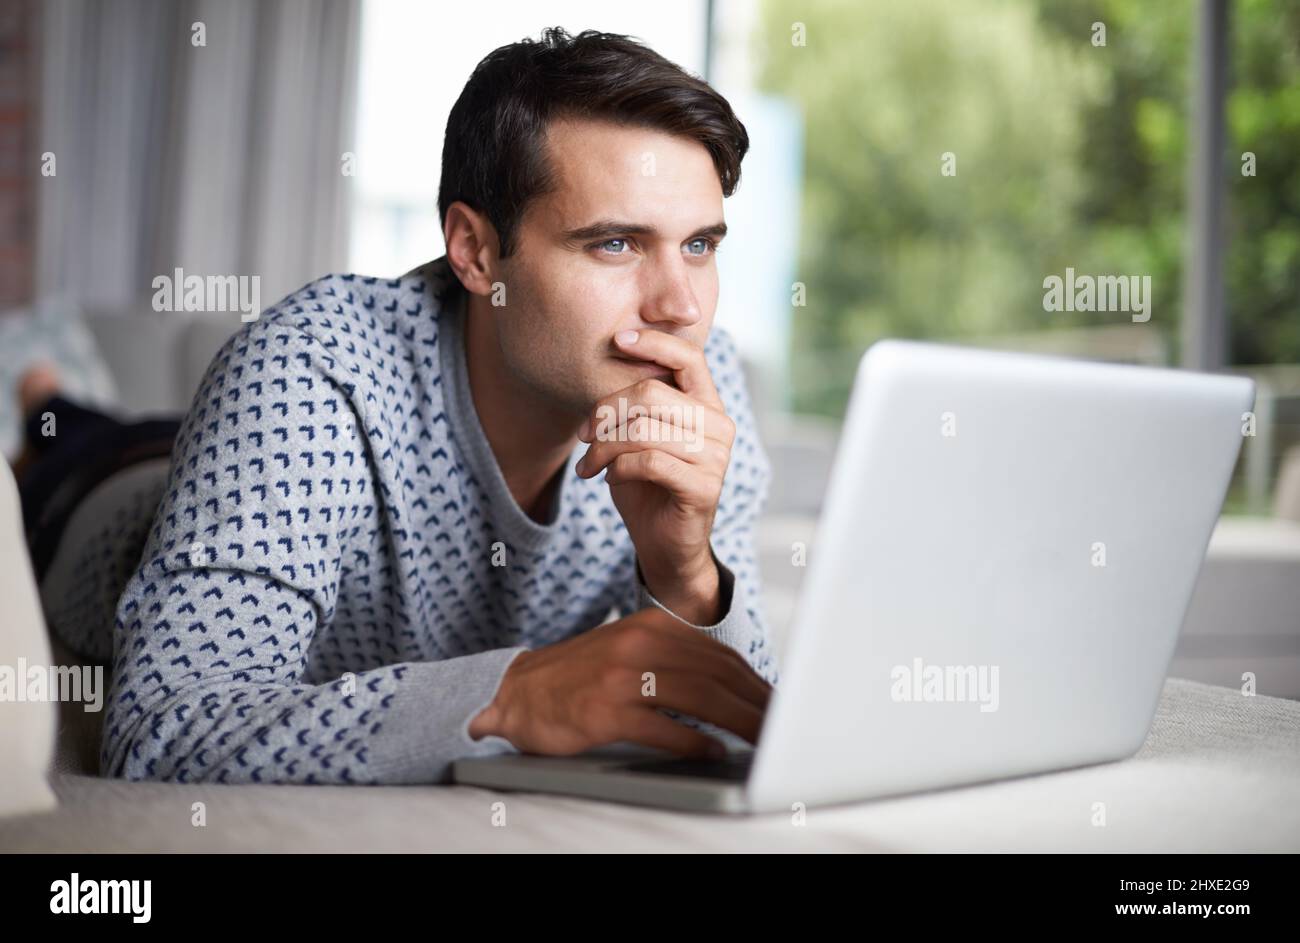 Wenn Sie versuchen, sich an Ihr Passwort zu erinnern Aufnahme eines jungen Mannes, der während der Verwendung seines Laptops nachdenkt. Stockfoto